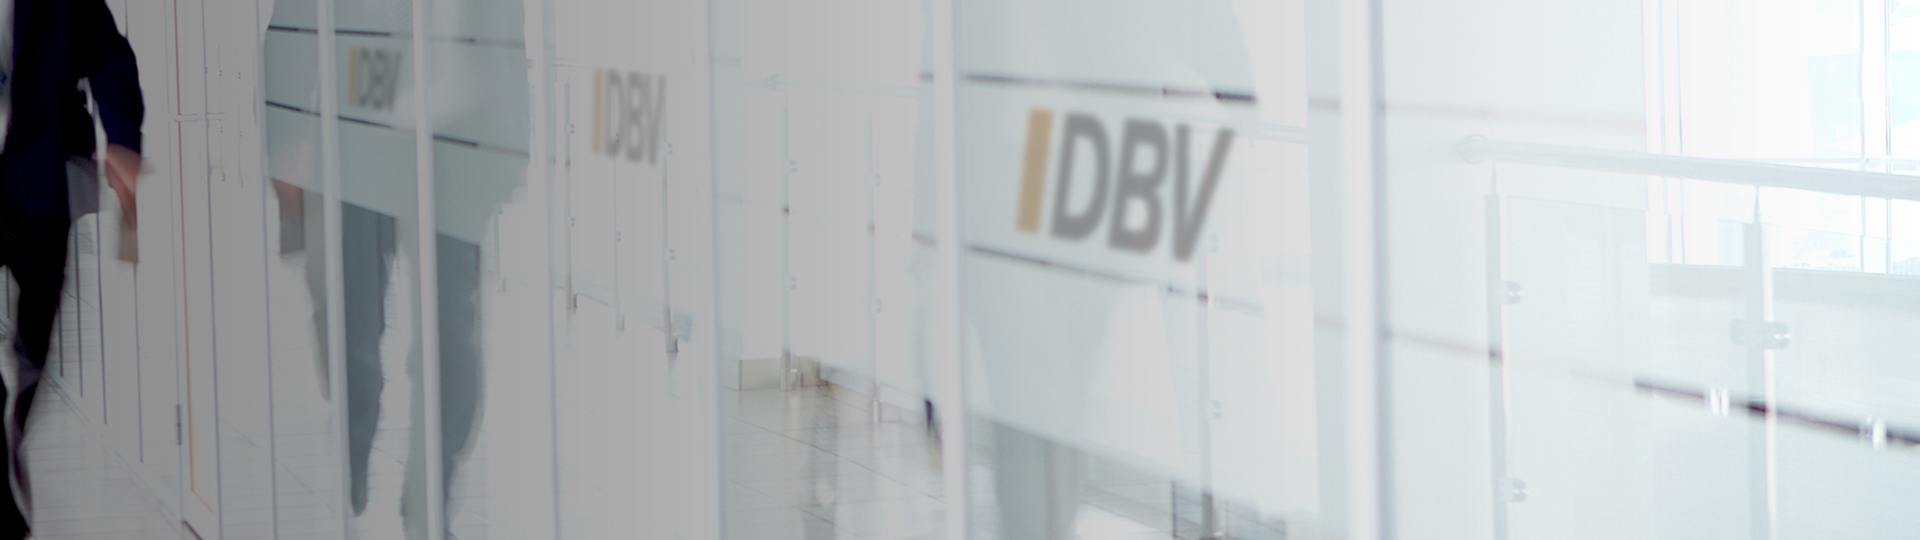 Diensthaftpflichtversicherung für Referendare | DBV Hannover Hornig & Knoch oHG 